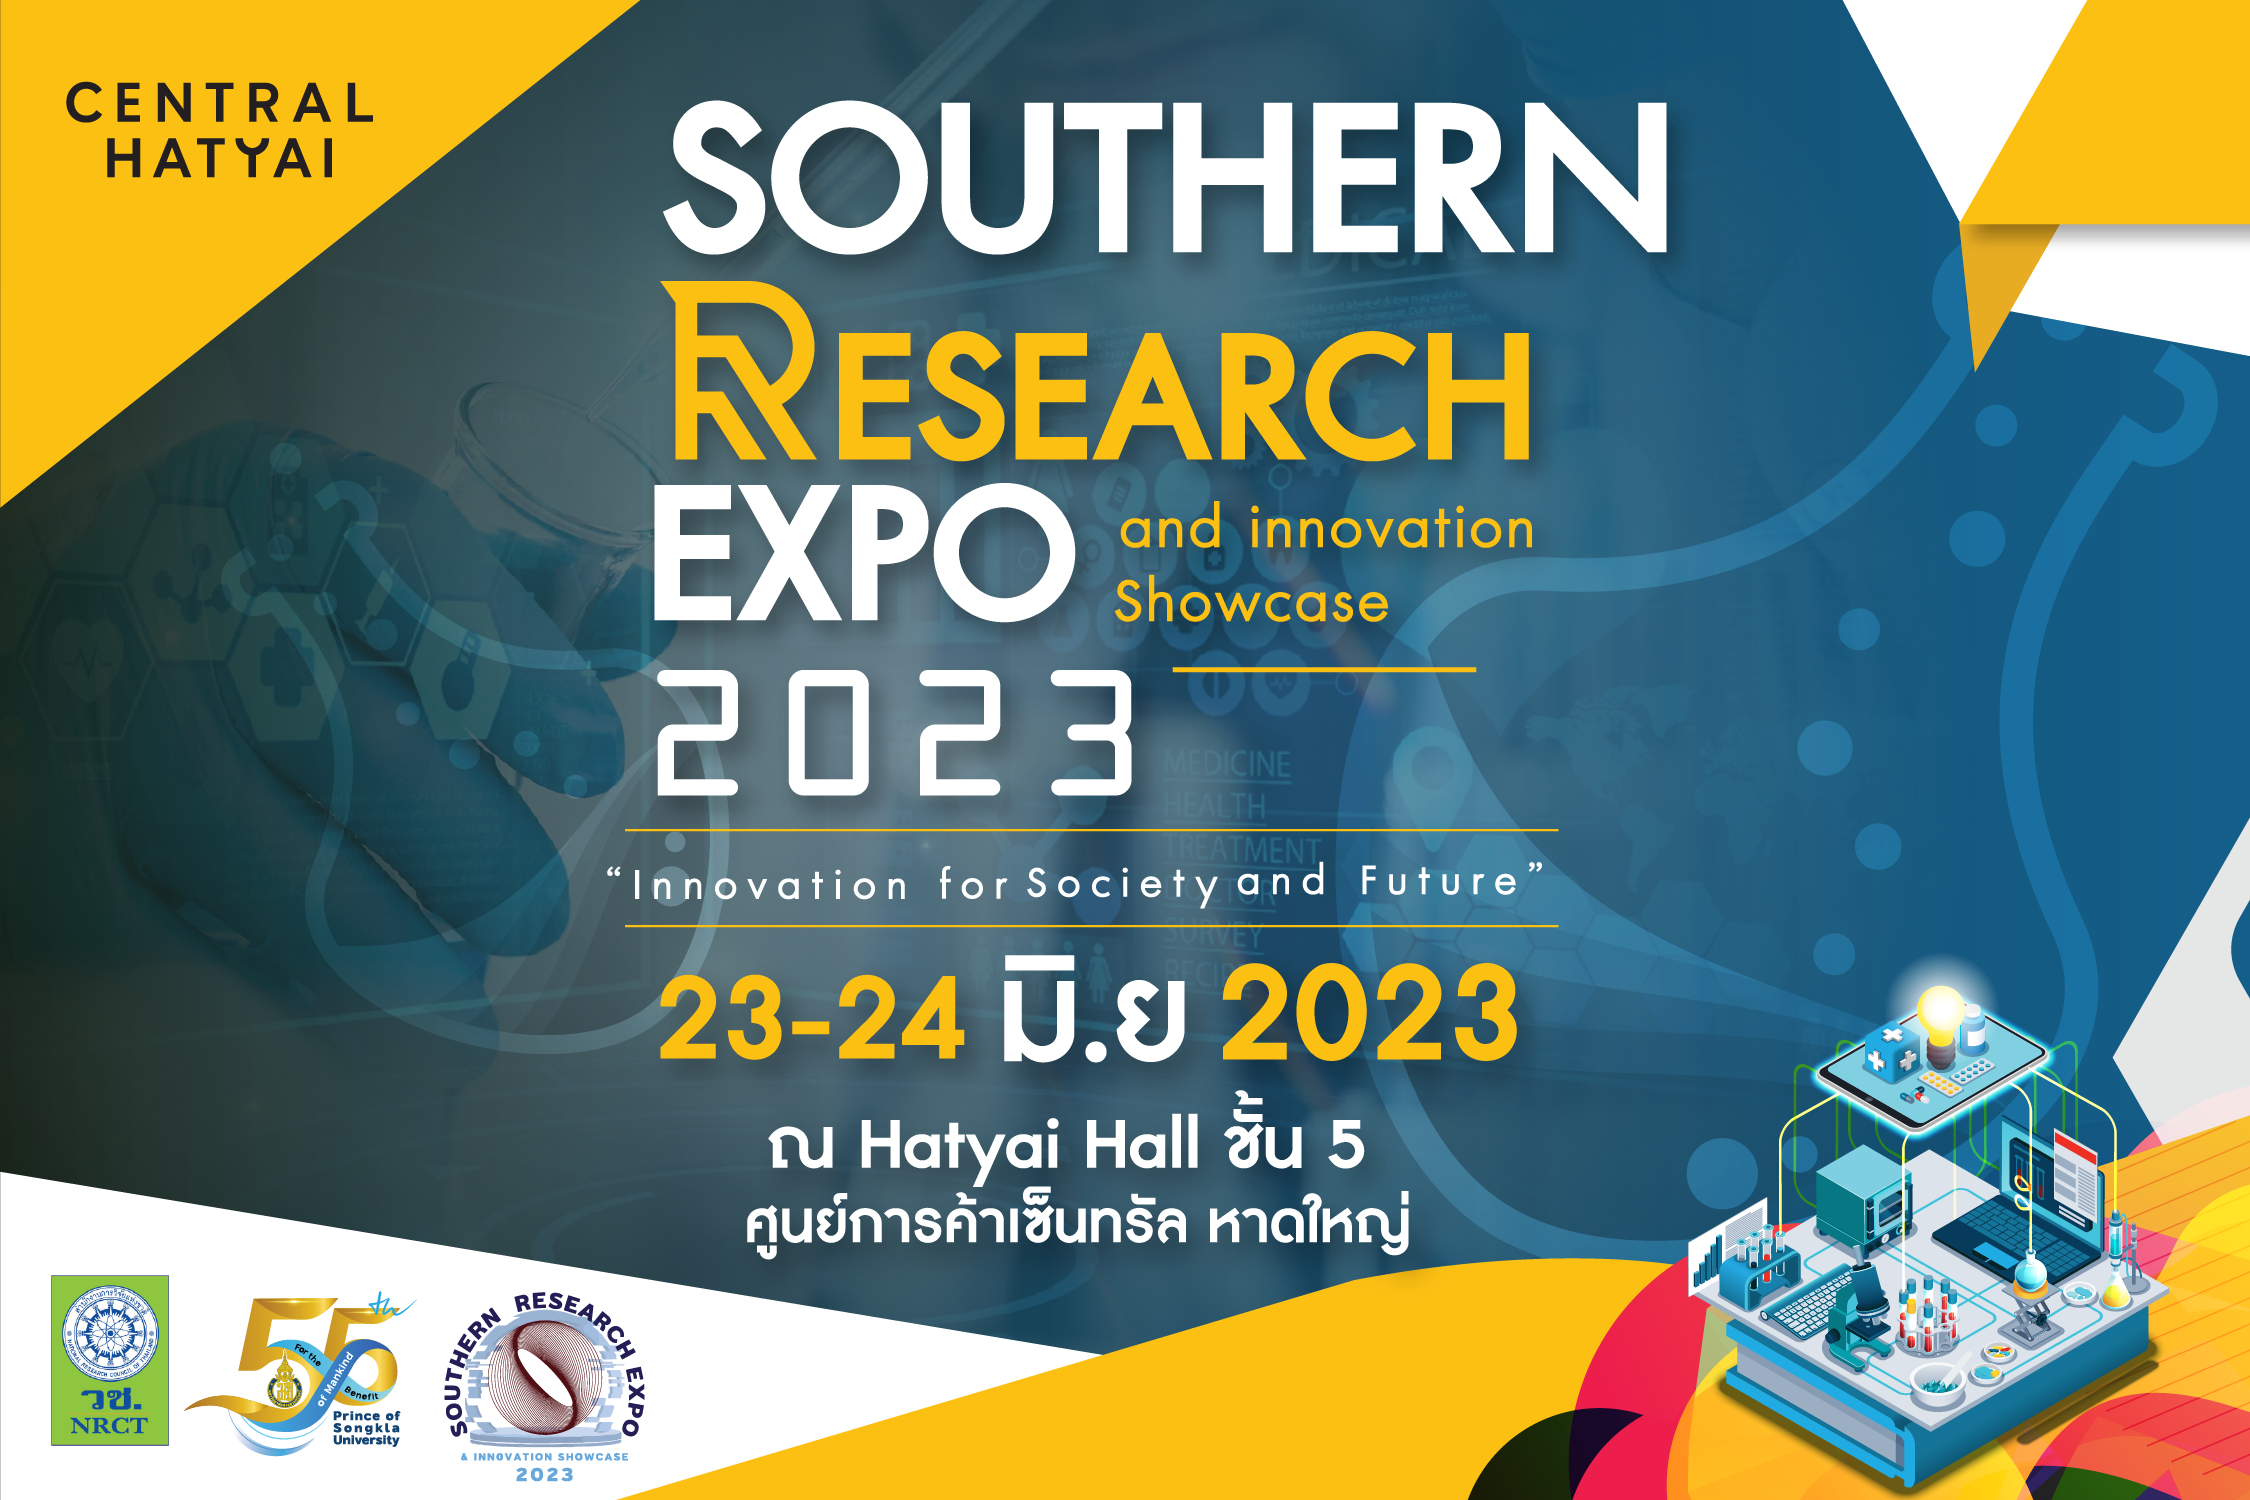 กลับมาอีกครั้ง กับมหกรรมงานวิจัยสุดยิ่งใหญ่ ที่ขยายองค์ความรู้มากกว่าเดิม ภายใต้ชื่อ “Southern Research EXPO & Innovation Showcase 2023” ในหัวข้อ “นวัตกรรมเพื่อสังคมและอนาคต (Innovation for Society and Future)”